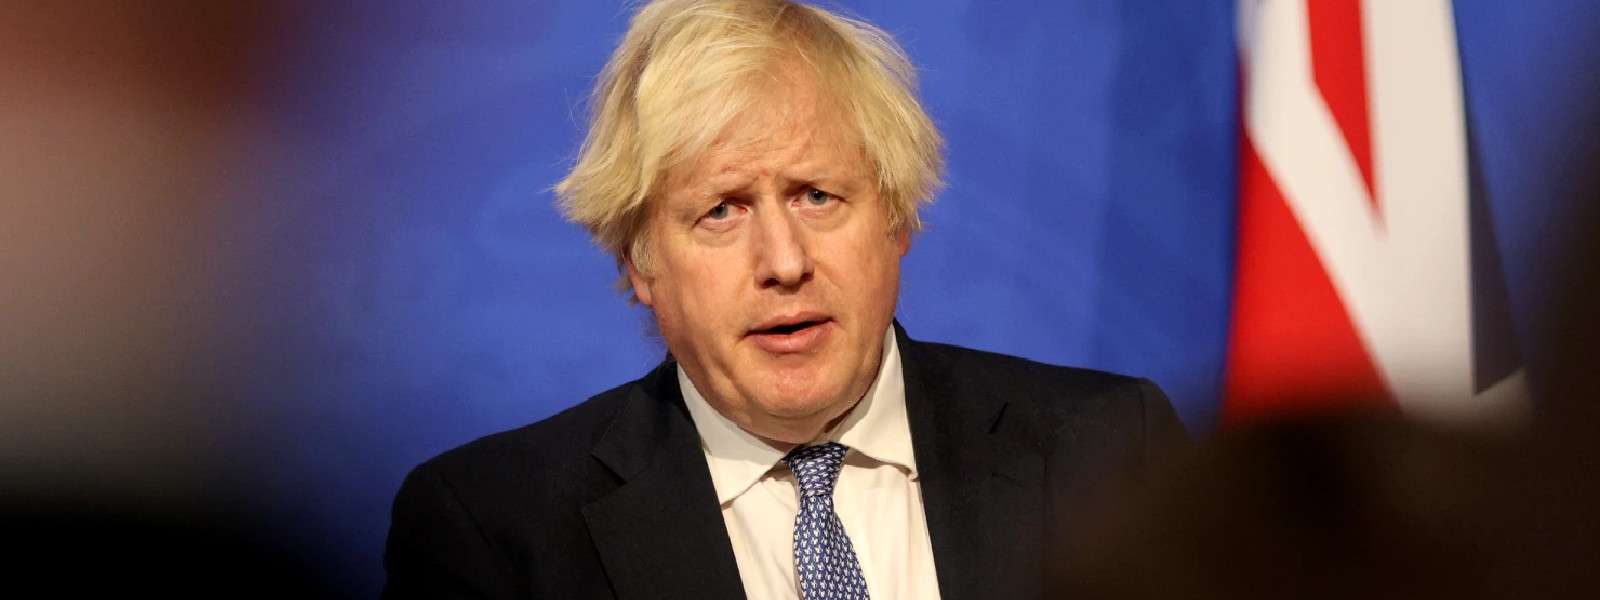 UK PM pledged support to Sri Lanka: PM